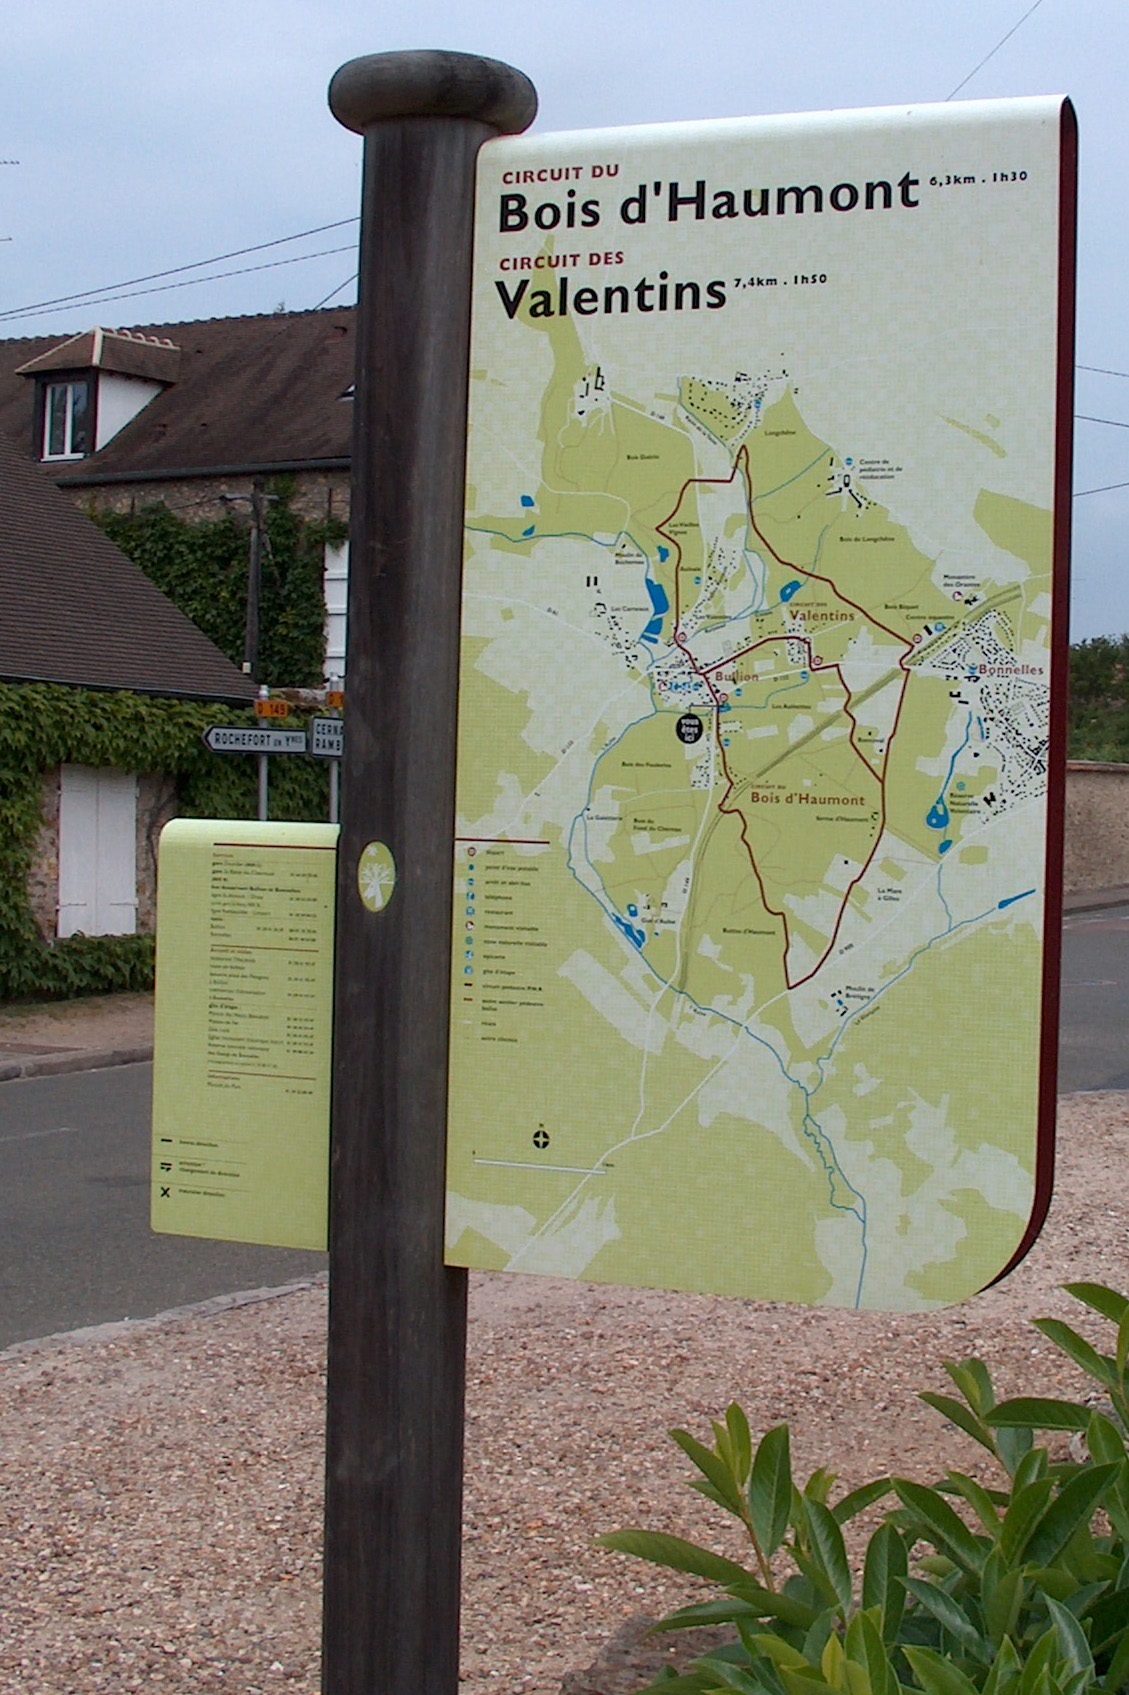 RIS randonnée - PNR Vallée de Chevreuse - EdiCarto - agence de cartographie spécialisée - Tourisme loisirs - Signalétique panneaux RIS